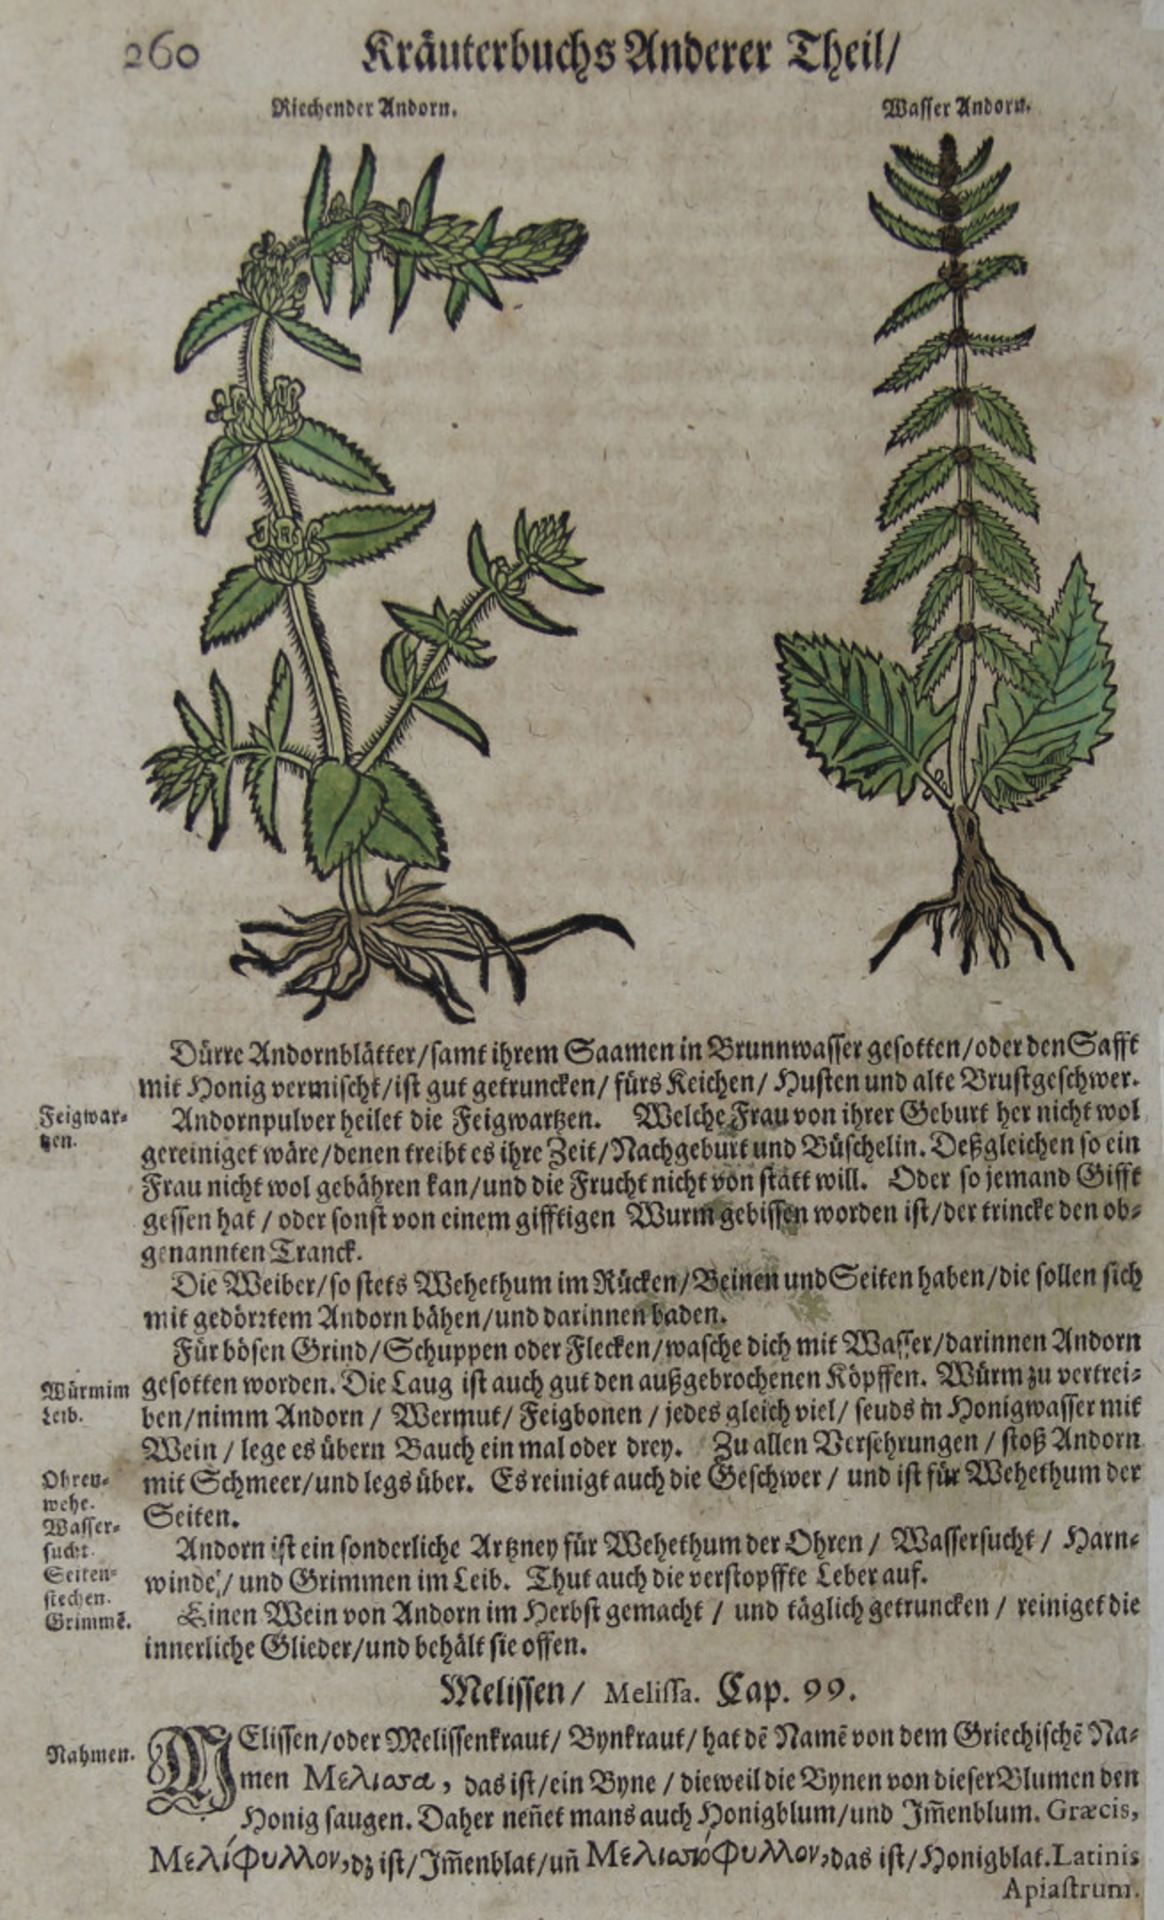 Pflanzen. - Heilpflanzen. - Konvolut von 134 Blatt mit Darstellungen verschiedener Heilpflanzen in - Image 2 of 2